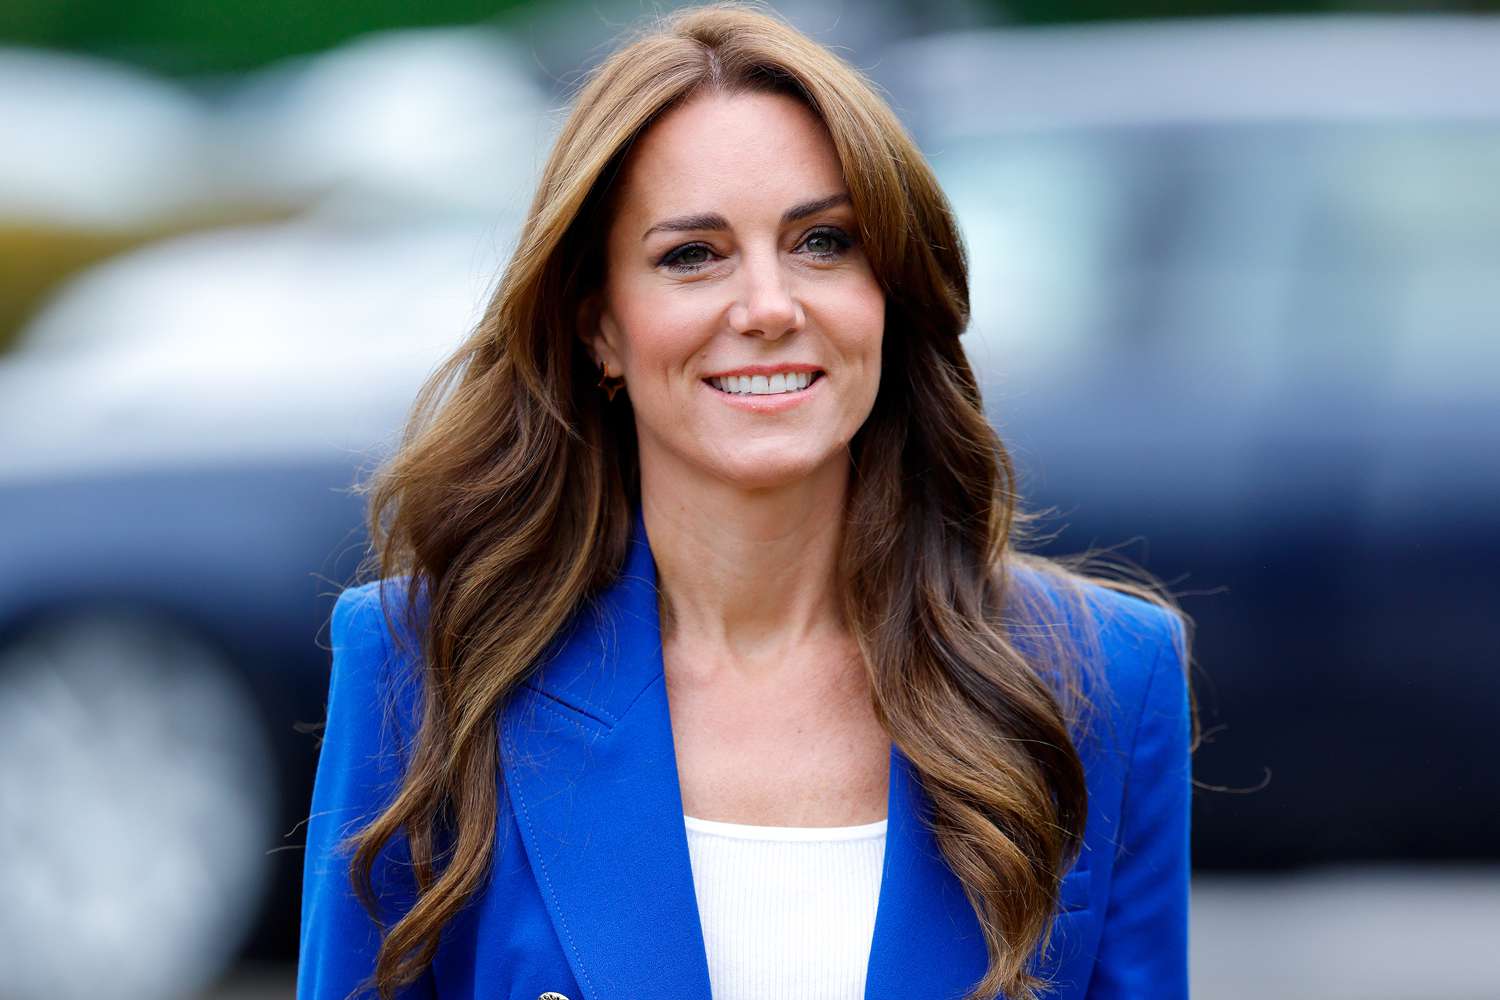 ‘Planet e Kate Middleton dhe Princit William për një shtëpi sekrete’ që janë jetike për shërimin e saj nga kanceri!